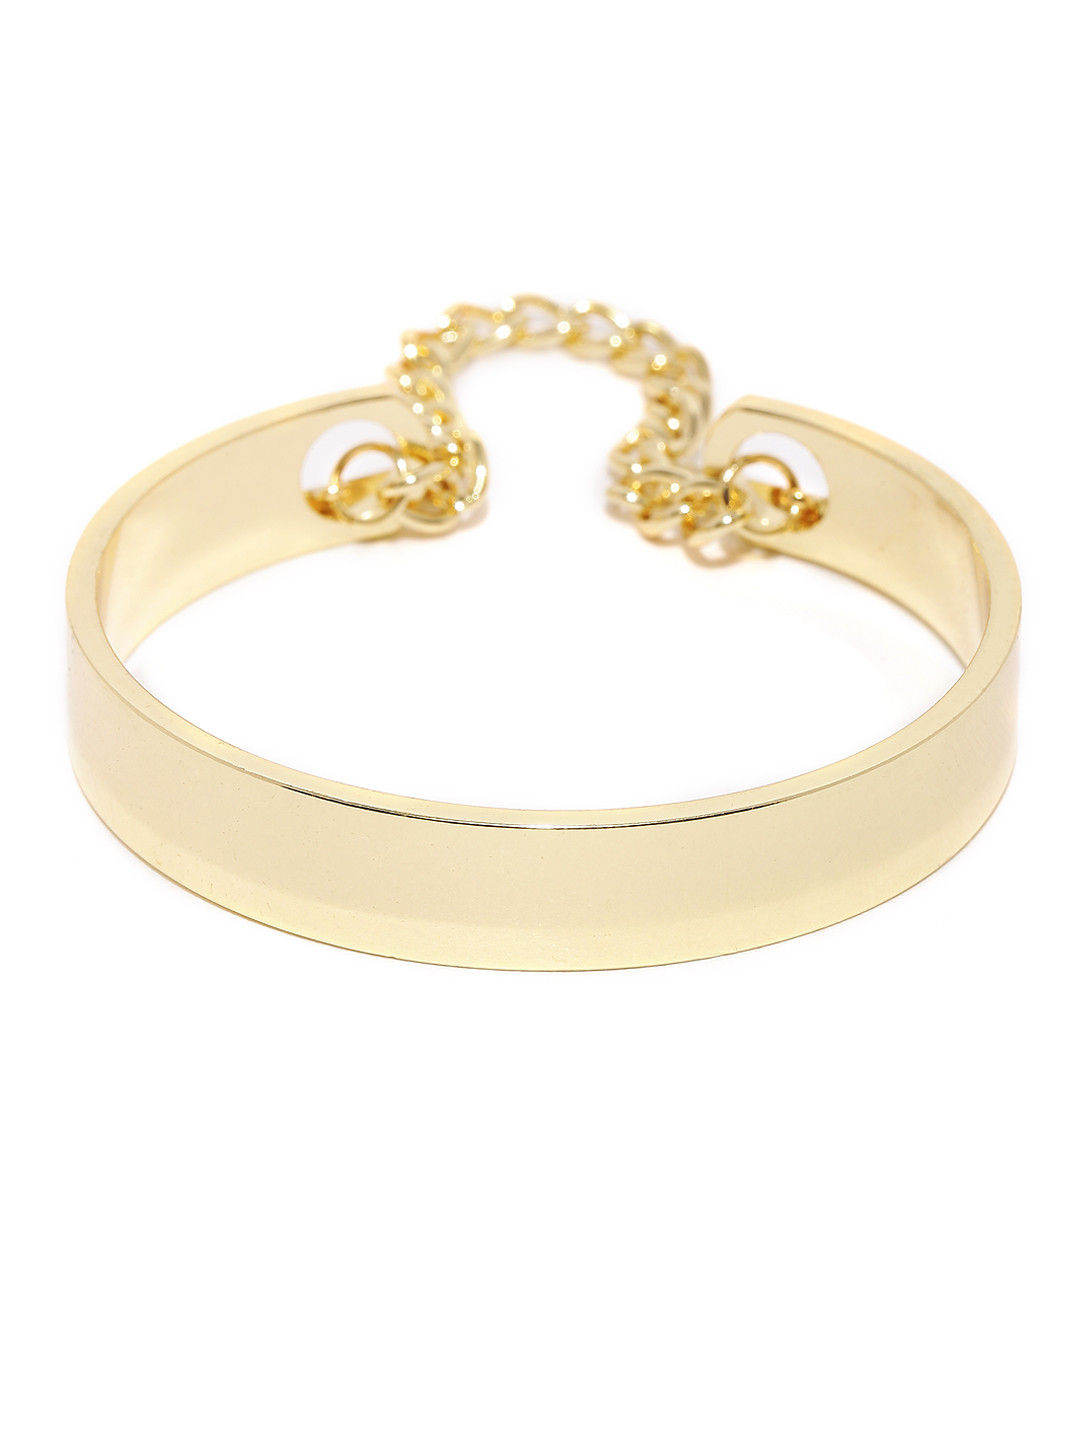 Toniq Spike Gold Bracelet: Buy Toniq Spike Gold Bracelet Online at Best ...